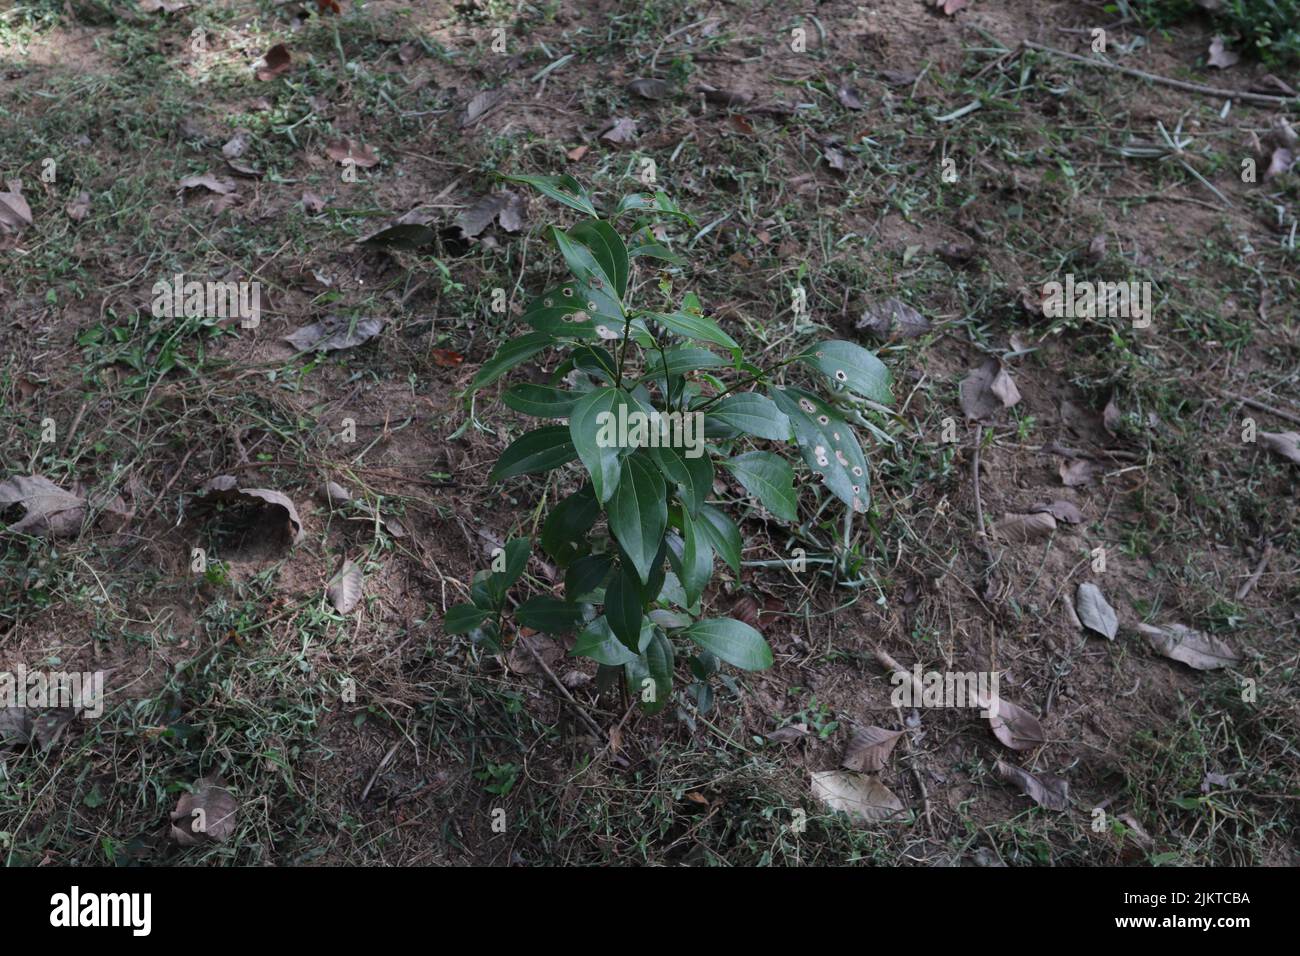 Una pianta di cannella giovane piantata cresce in una piantagione di cannella, in fondo piante erbose rimosse e messe sul terreno per diventare secco e decomporsi Foto Stock